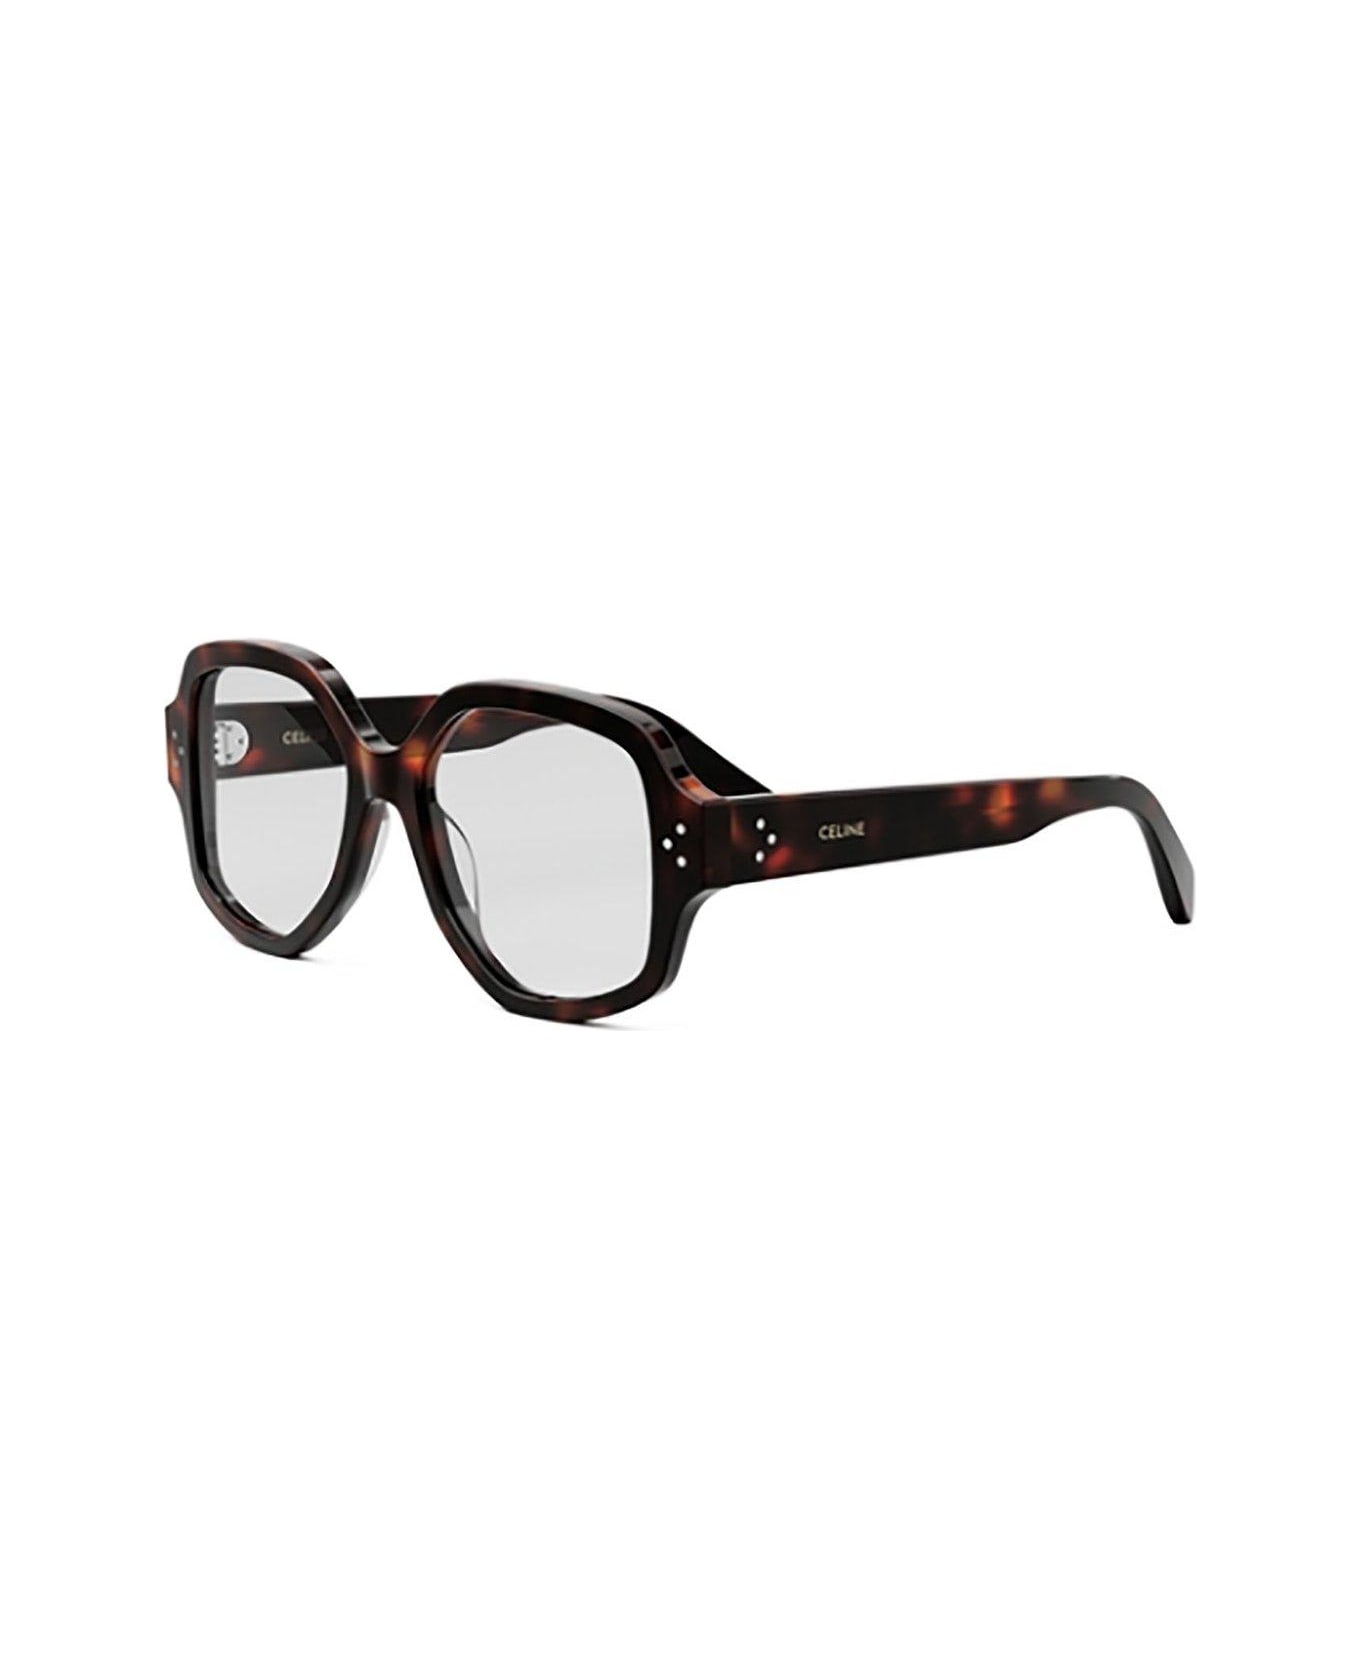 Celine Eyewear Squared Frame Glasses - 052 アイウェア